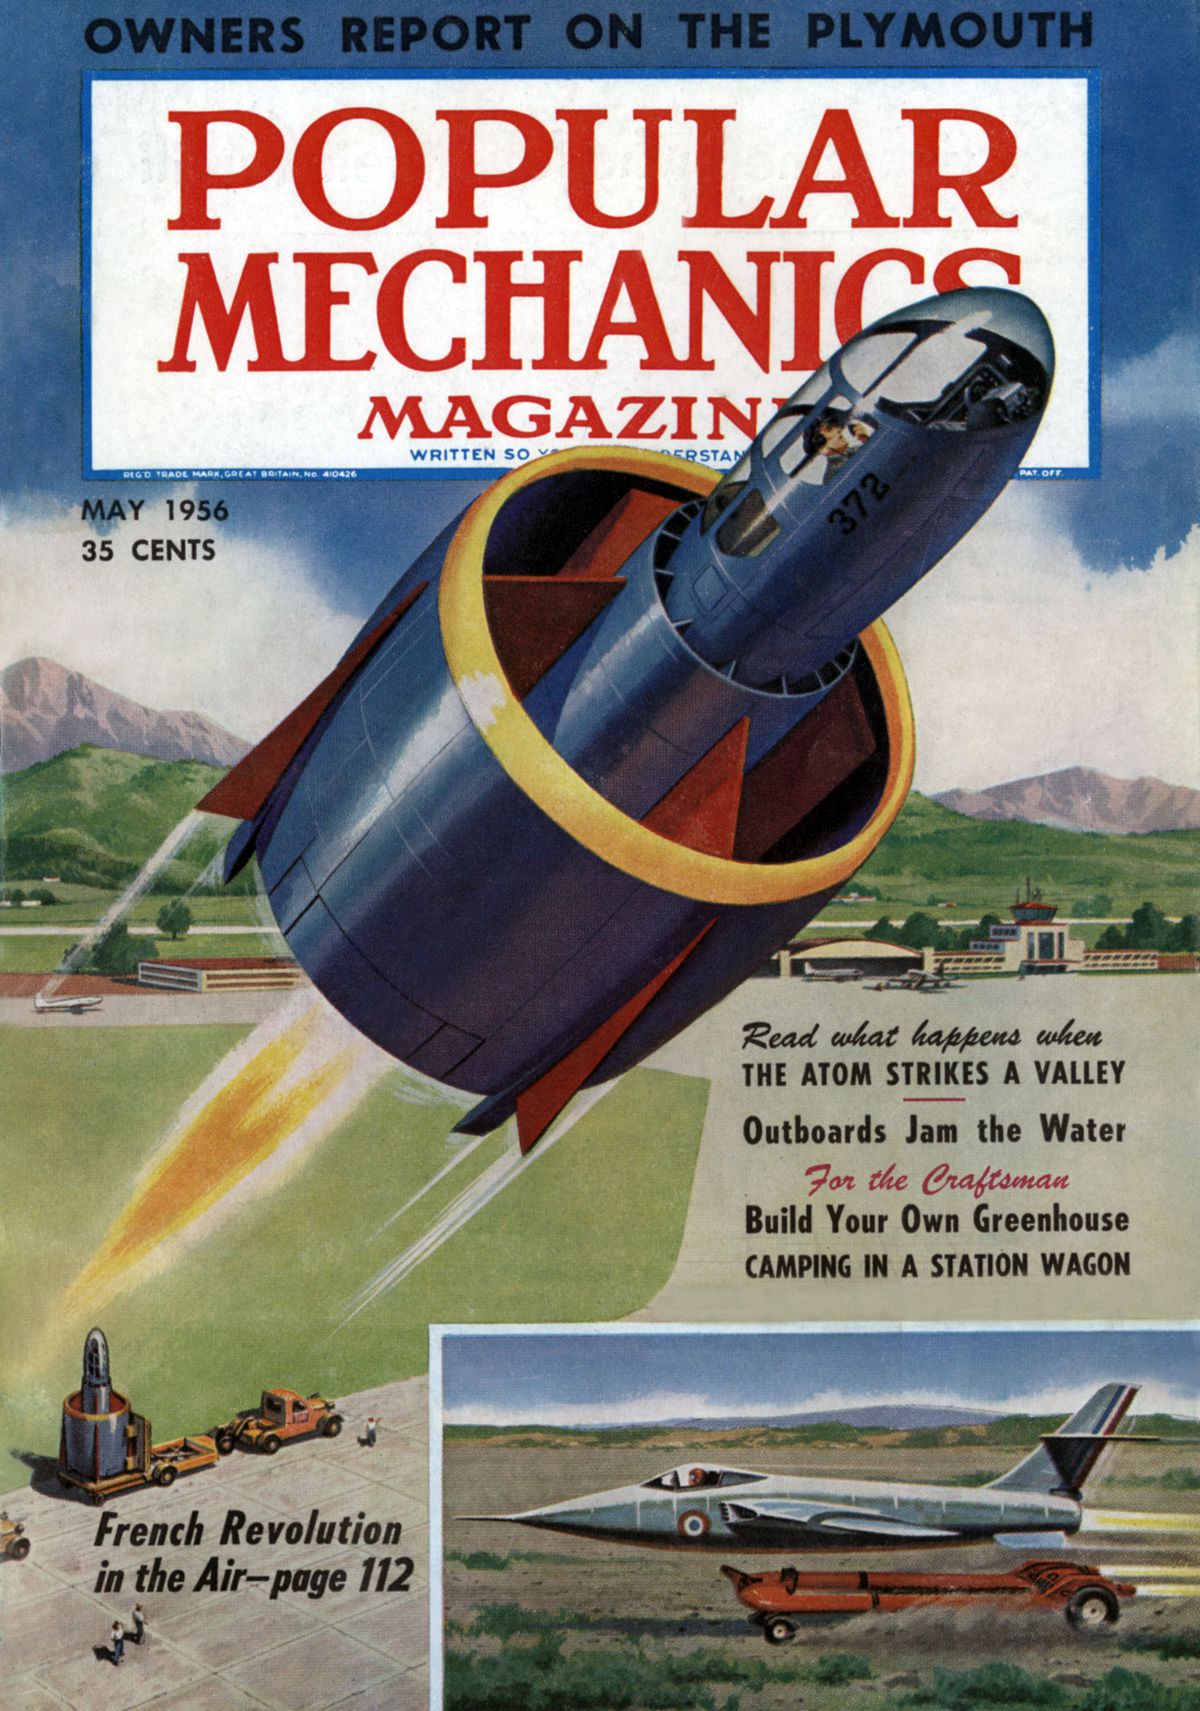 Copertina della rivista americana Popular Mechanics Magazine” maggio 1956 : La nuova rivoluzione francese nell'aria : un tail-sitter francese : SNECMA /BTZ Coleopter